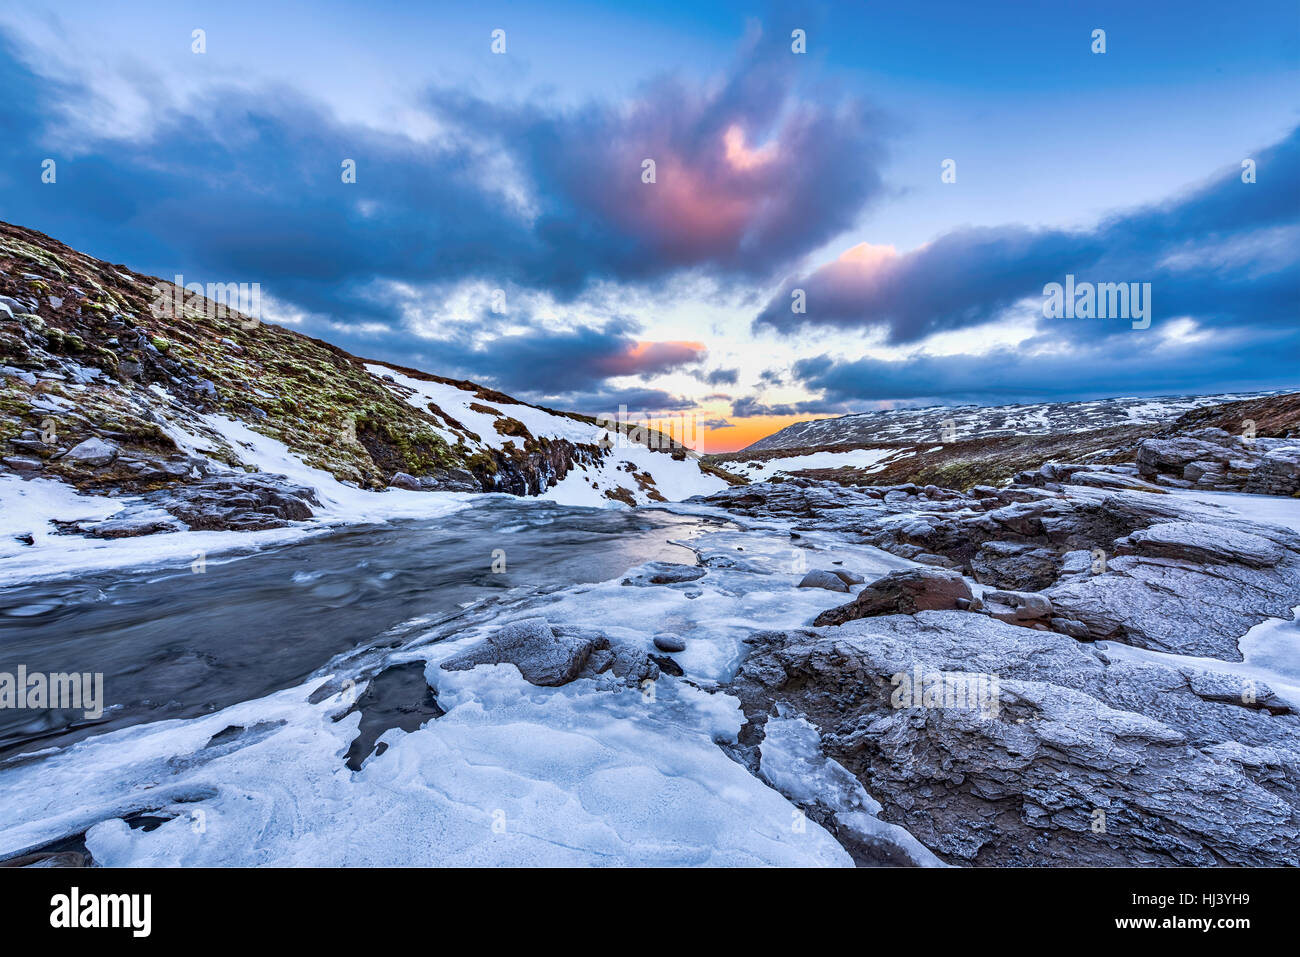 Une froide Snowy River dans les hautes terres d'Islande encadrée par un ciel pastel et le terrain accidenté offre des paysages pittoresques illustrant le désert gelé. Banque D'Images